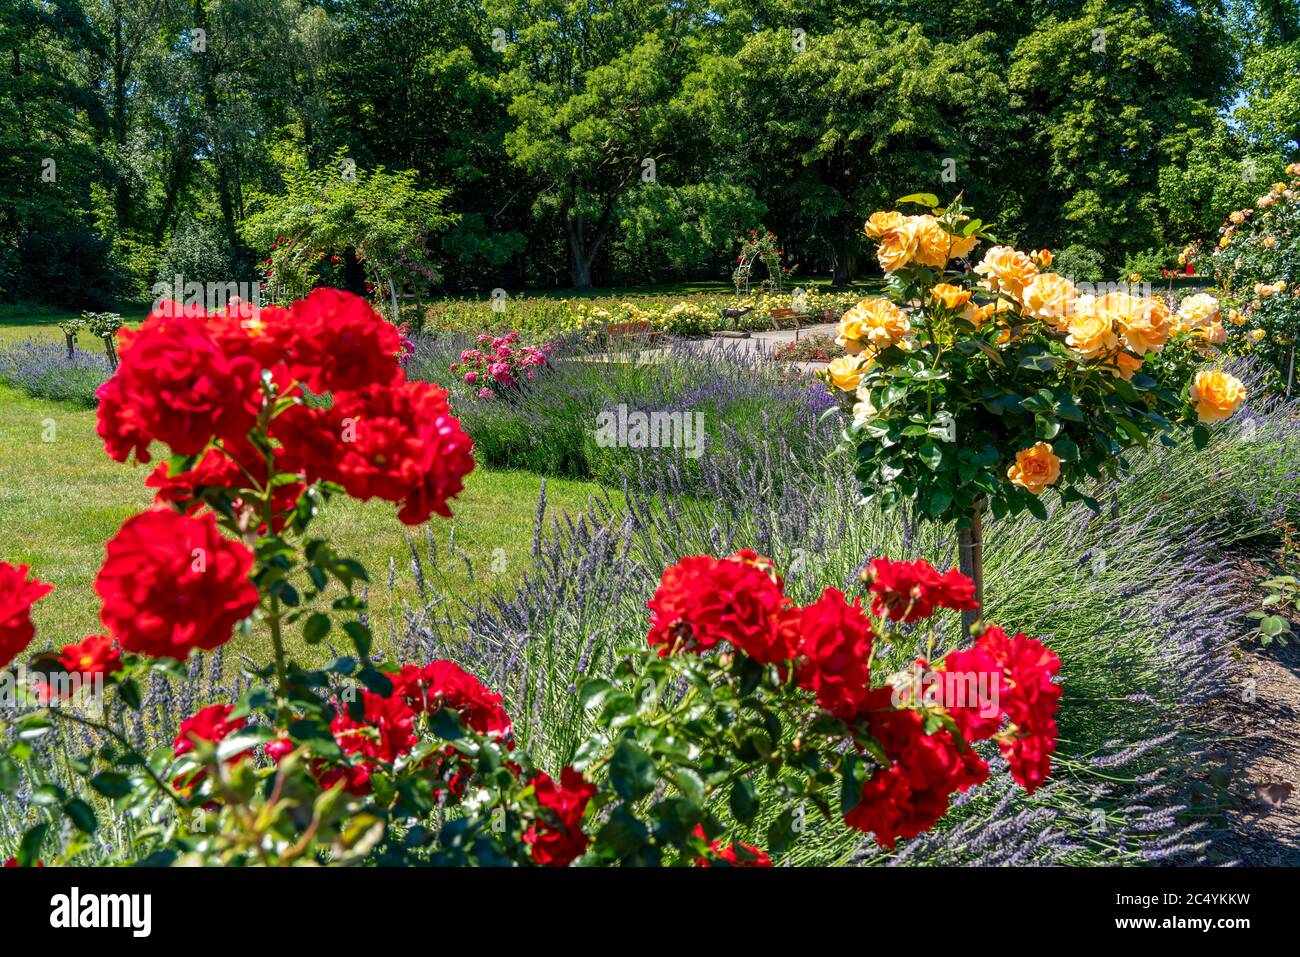 Le Grugapark, Essen, jardin botanique, parc de loisirs et de loisirs locaux, Rose Garden, NRW, Allemagne Banque D'Images